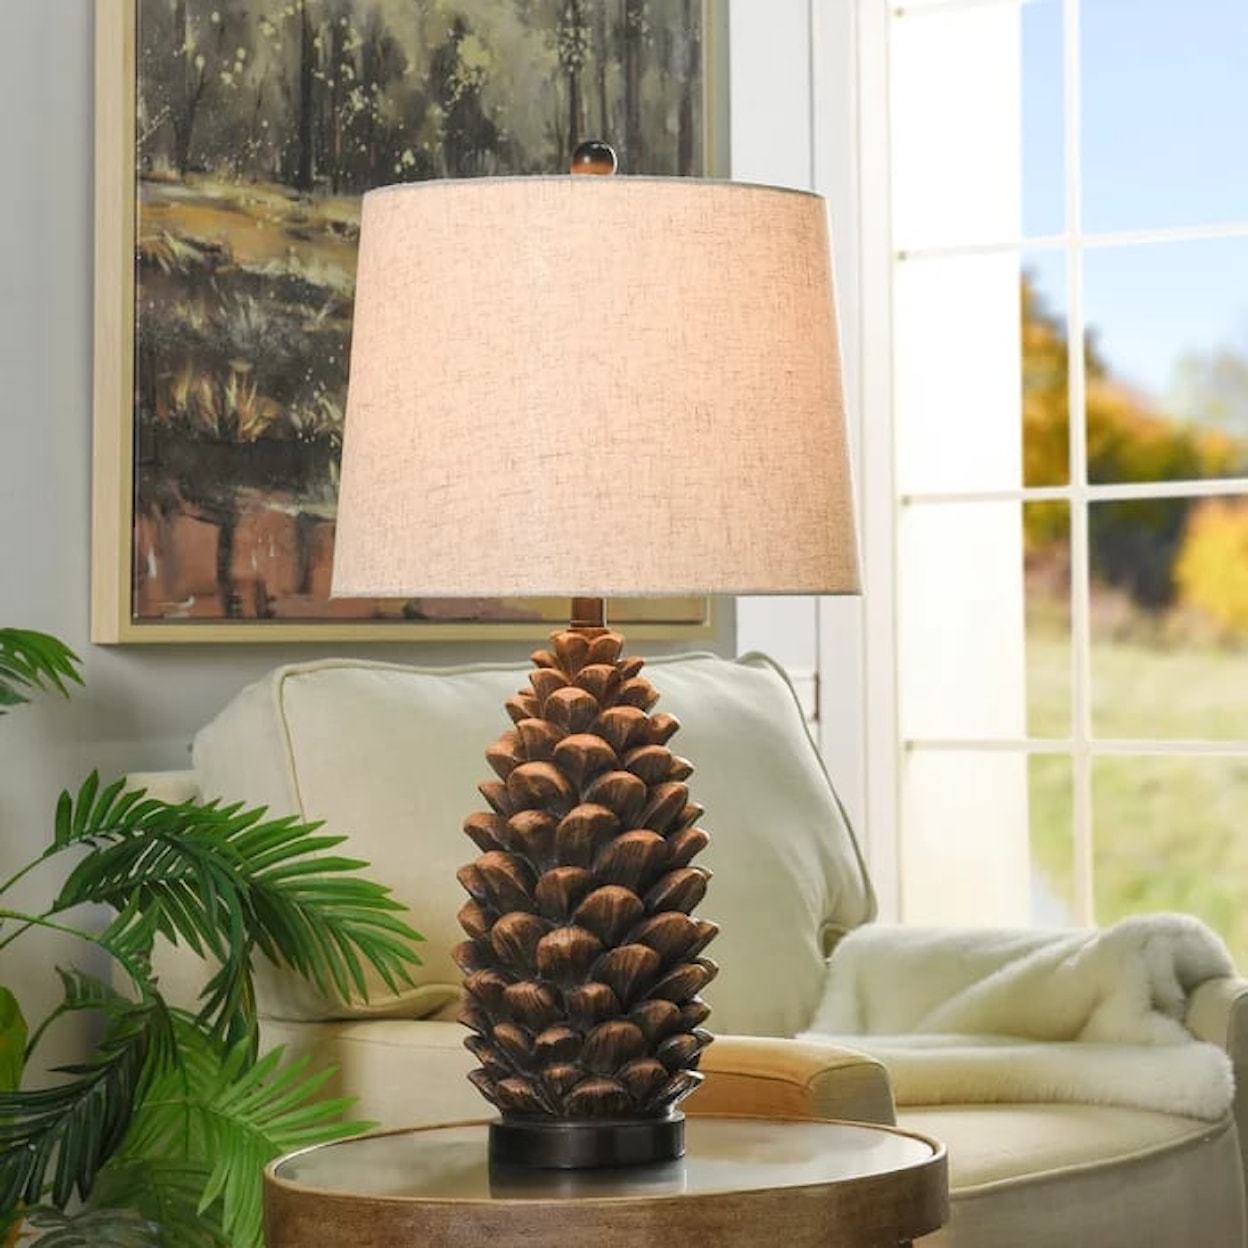 StyleCraft Lamps Roanoke Rustic Table Lamp